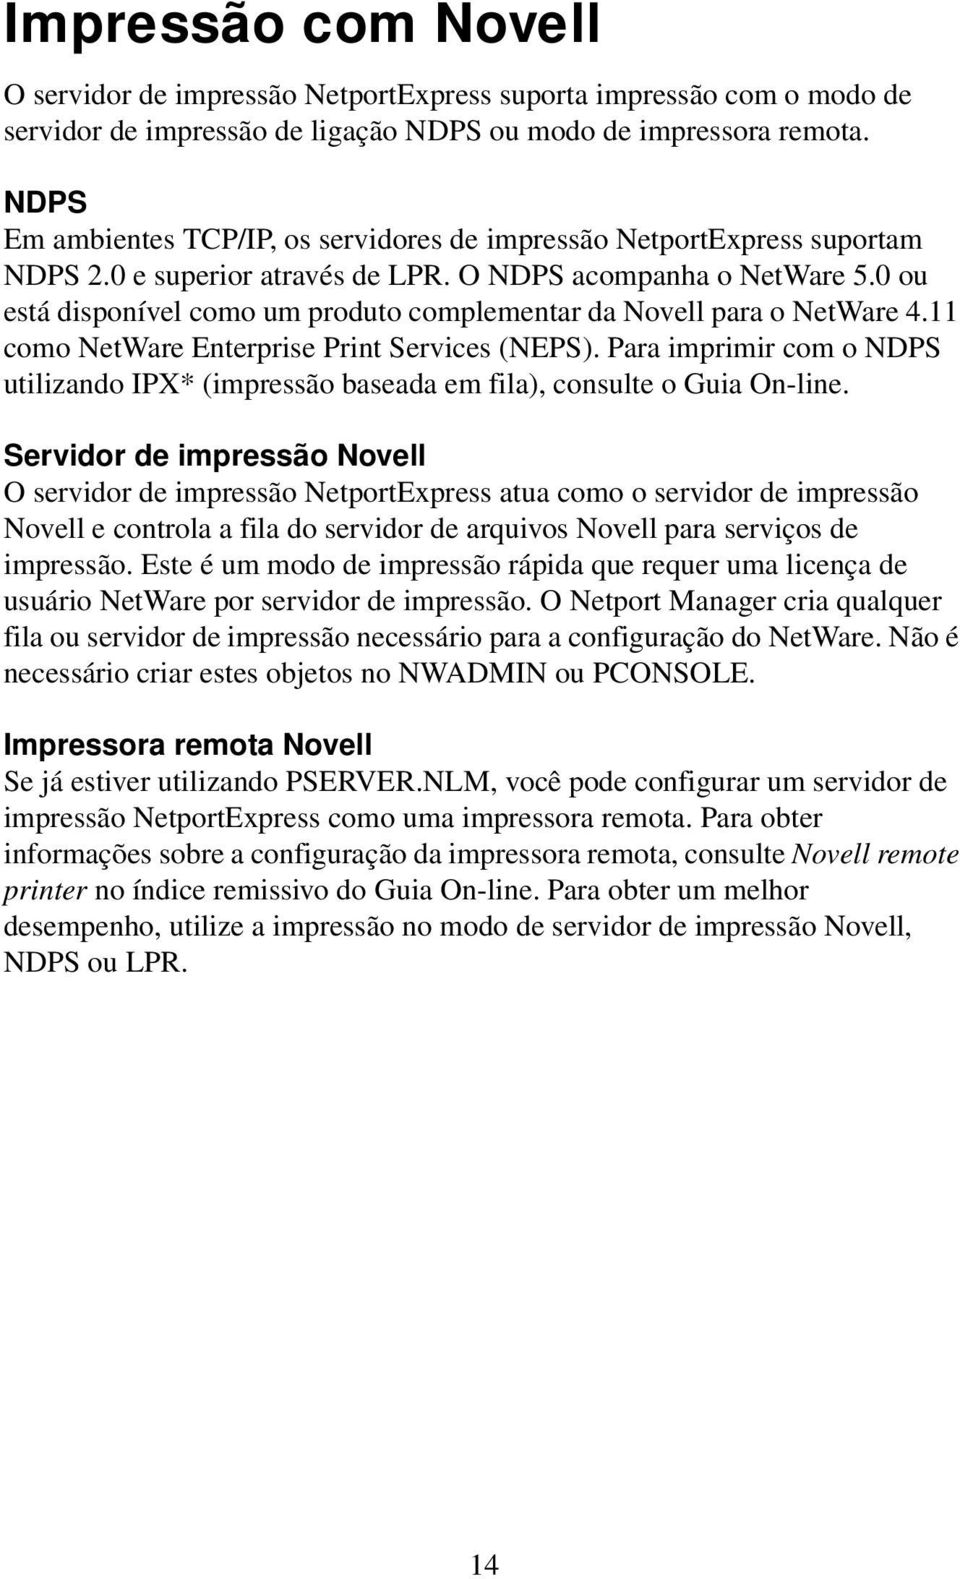 0 ou está disponível como um produto complementar da Novell para o NetWare 4.11 como NetWare Enterprise Print Services (NEPS).